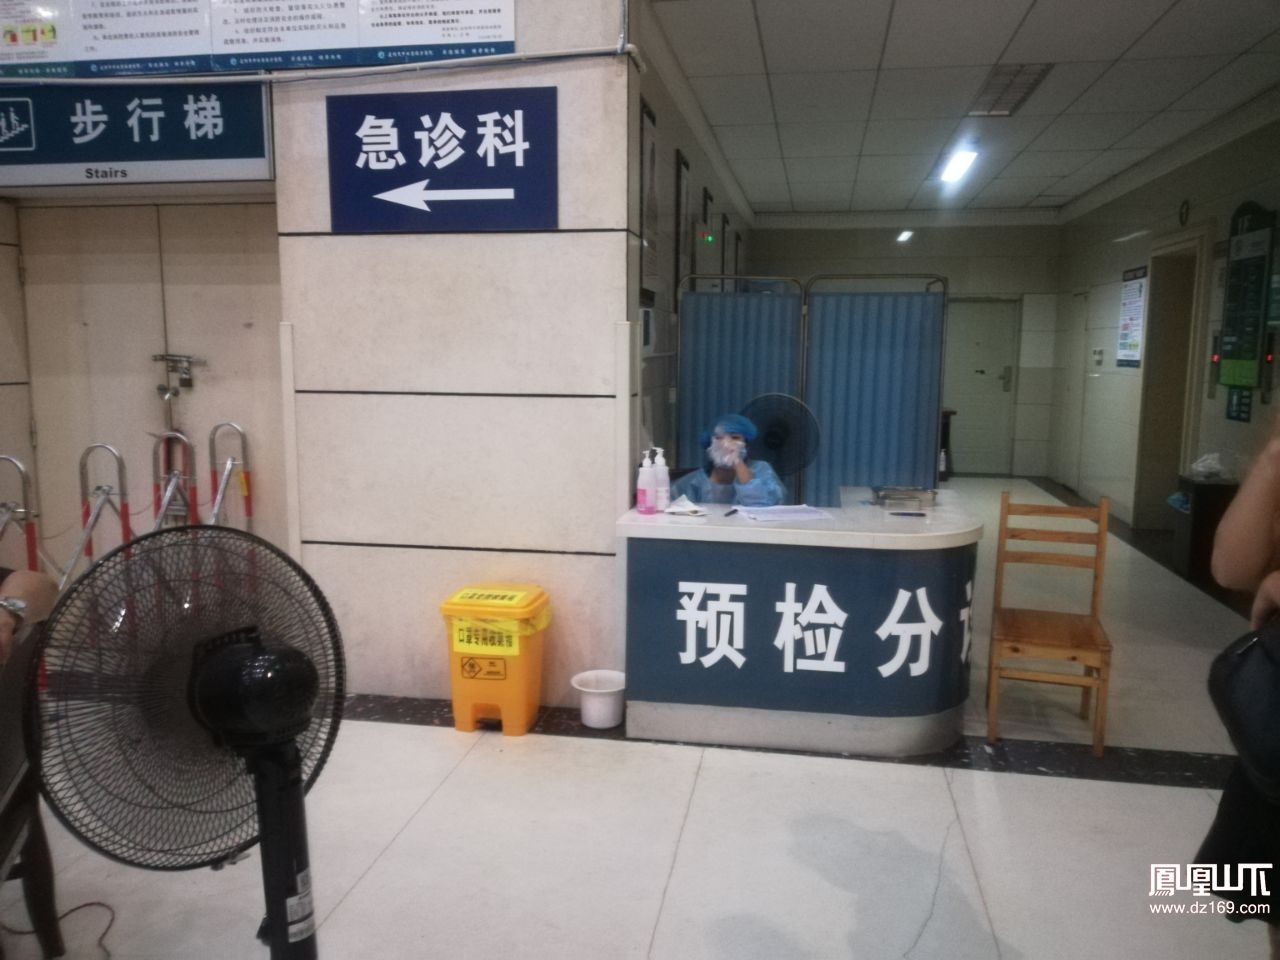 包含中国中医科学院广安门医院黄牛第一安排挂号说到必须做到的词条